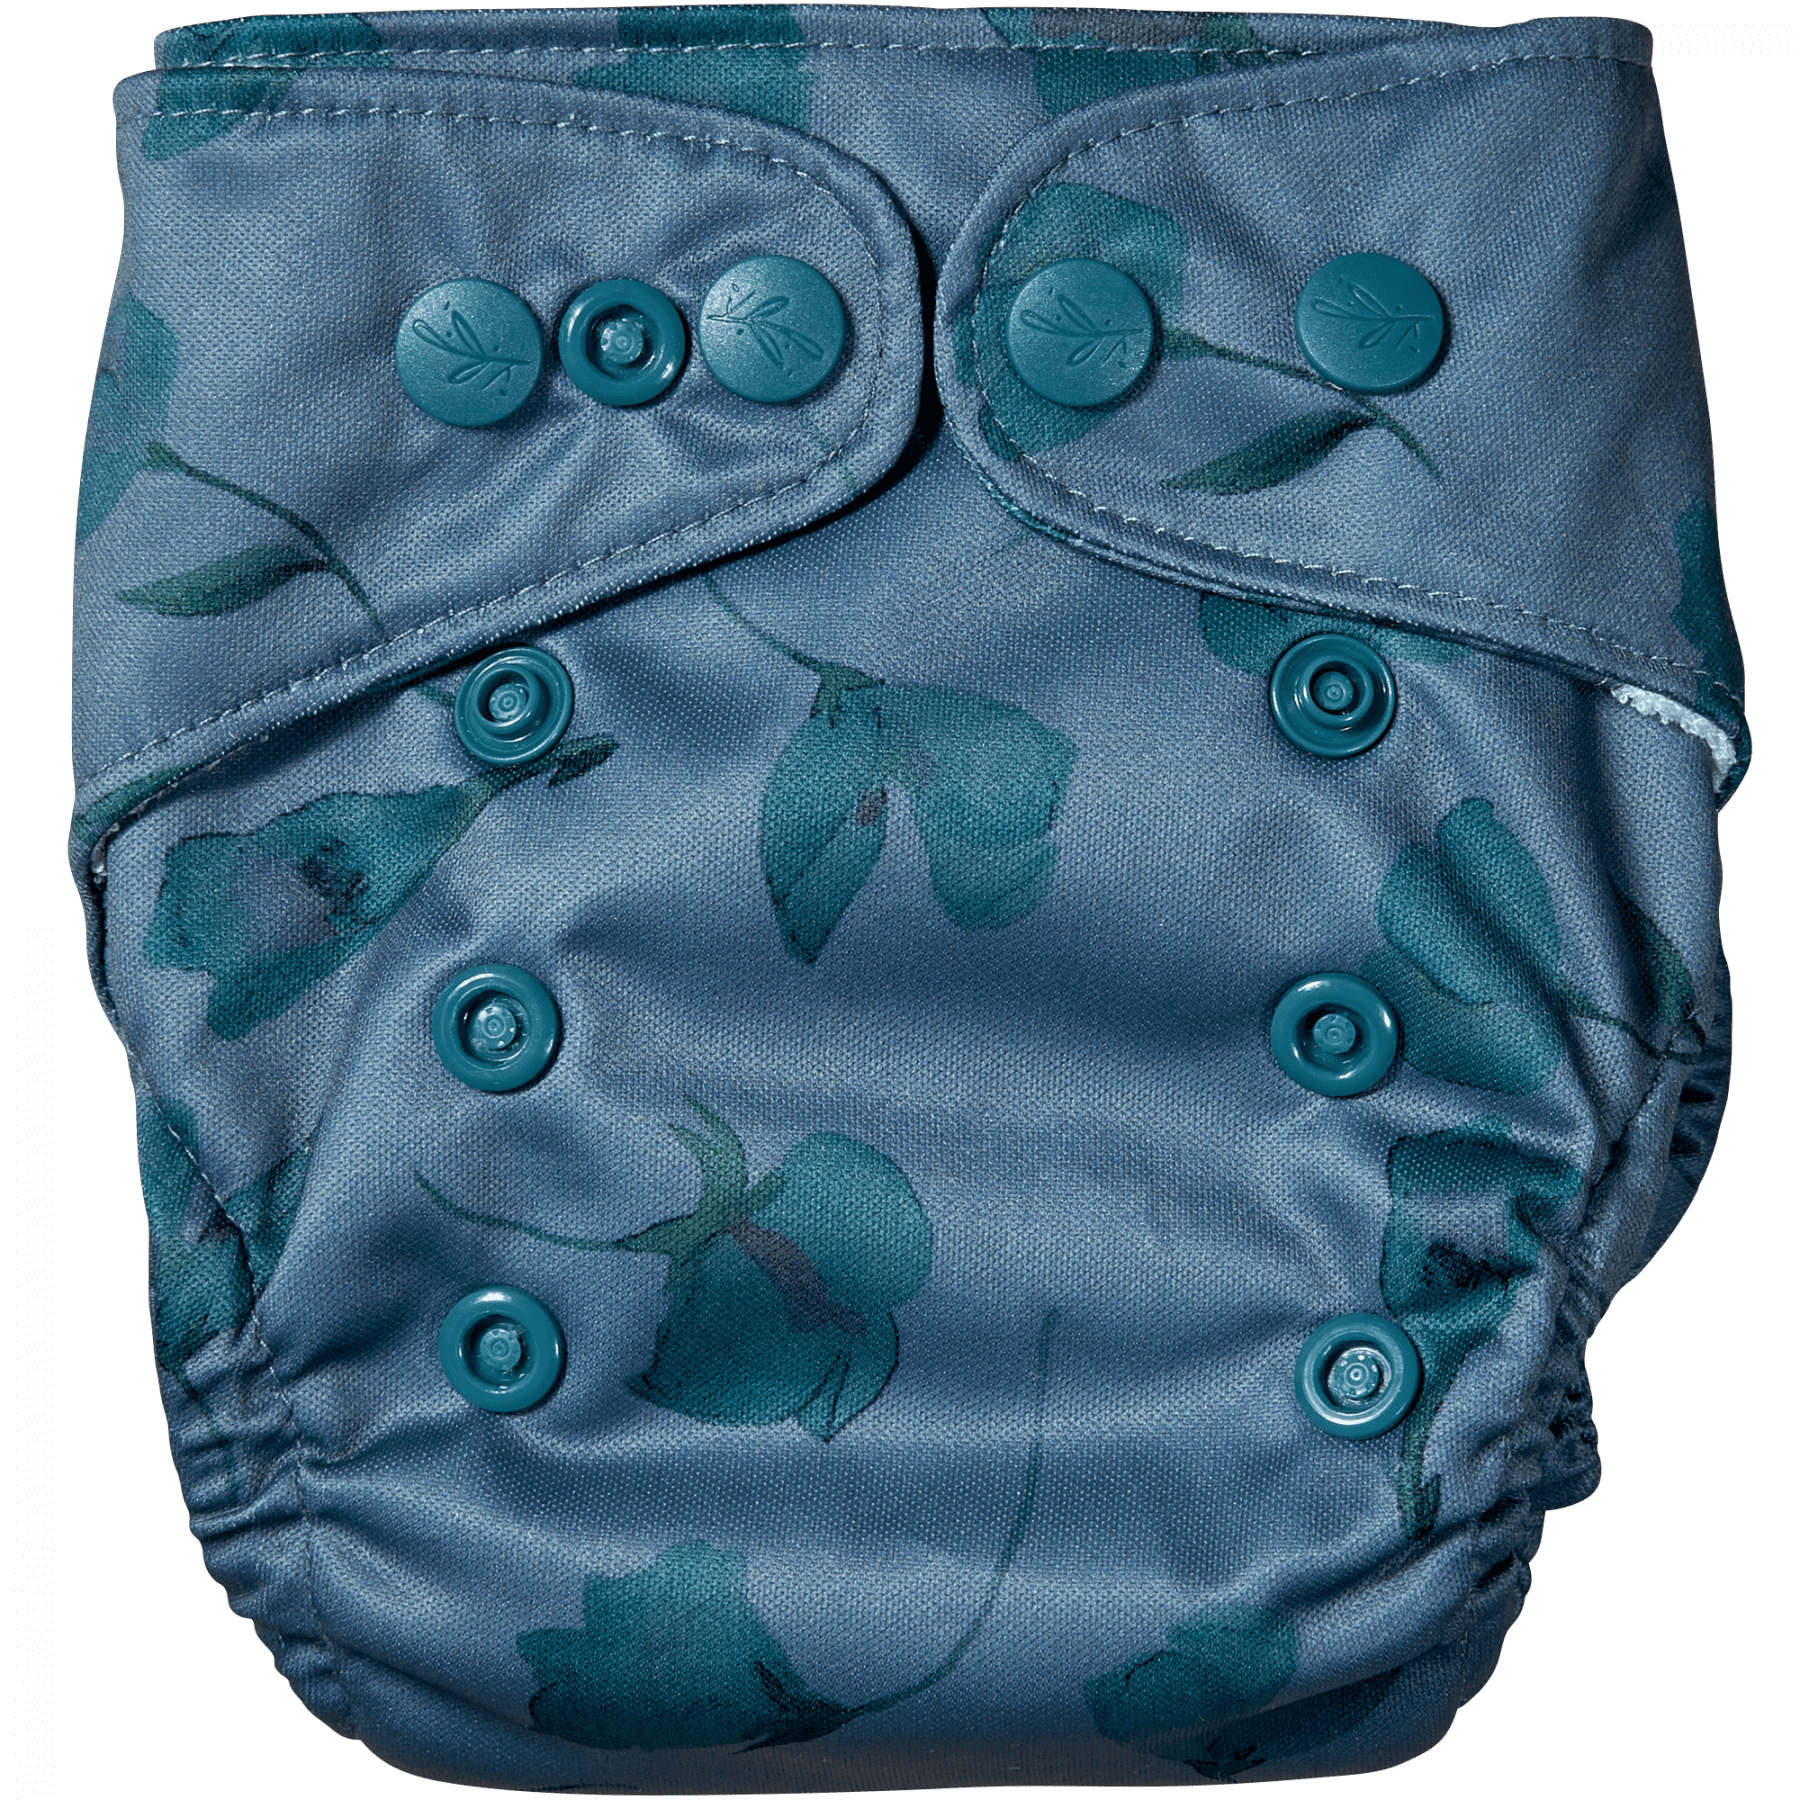 Natural Newborn - Pea - newborn cloth diaper